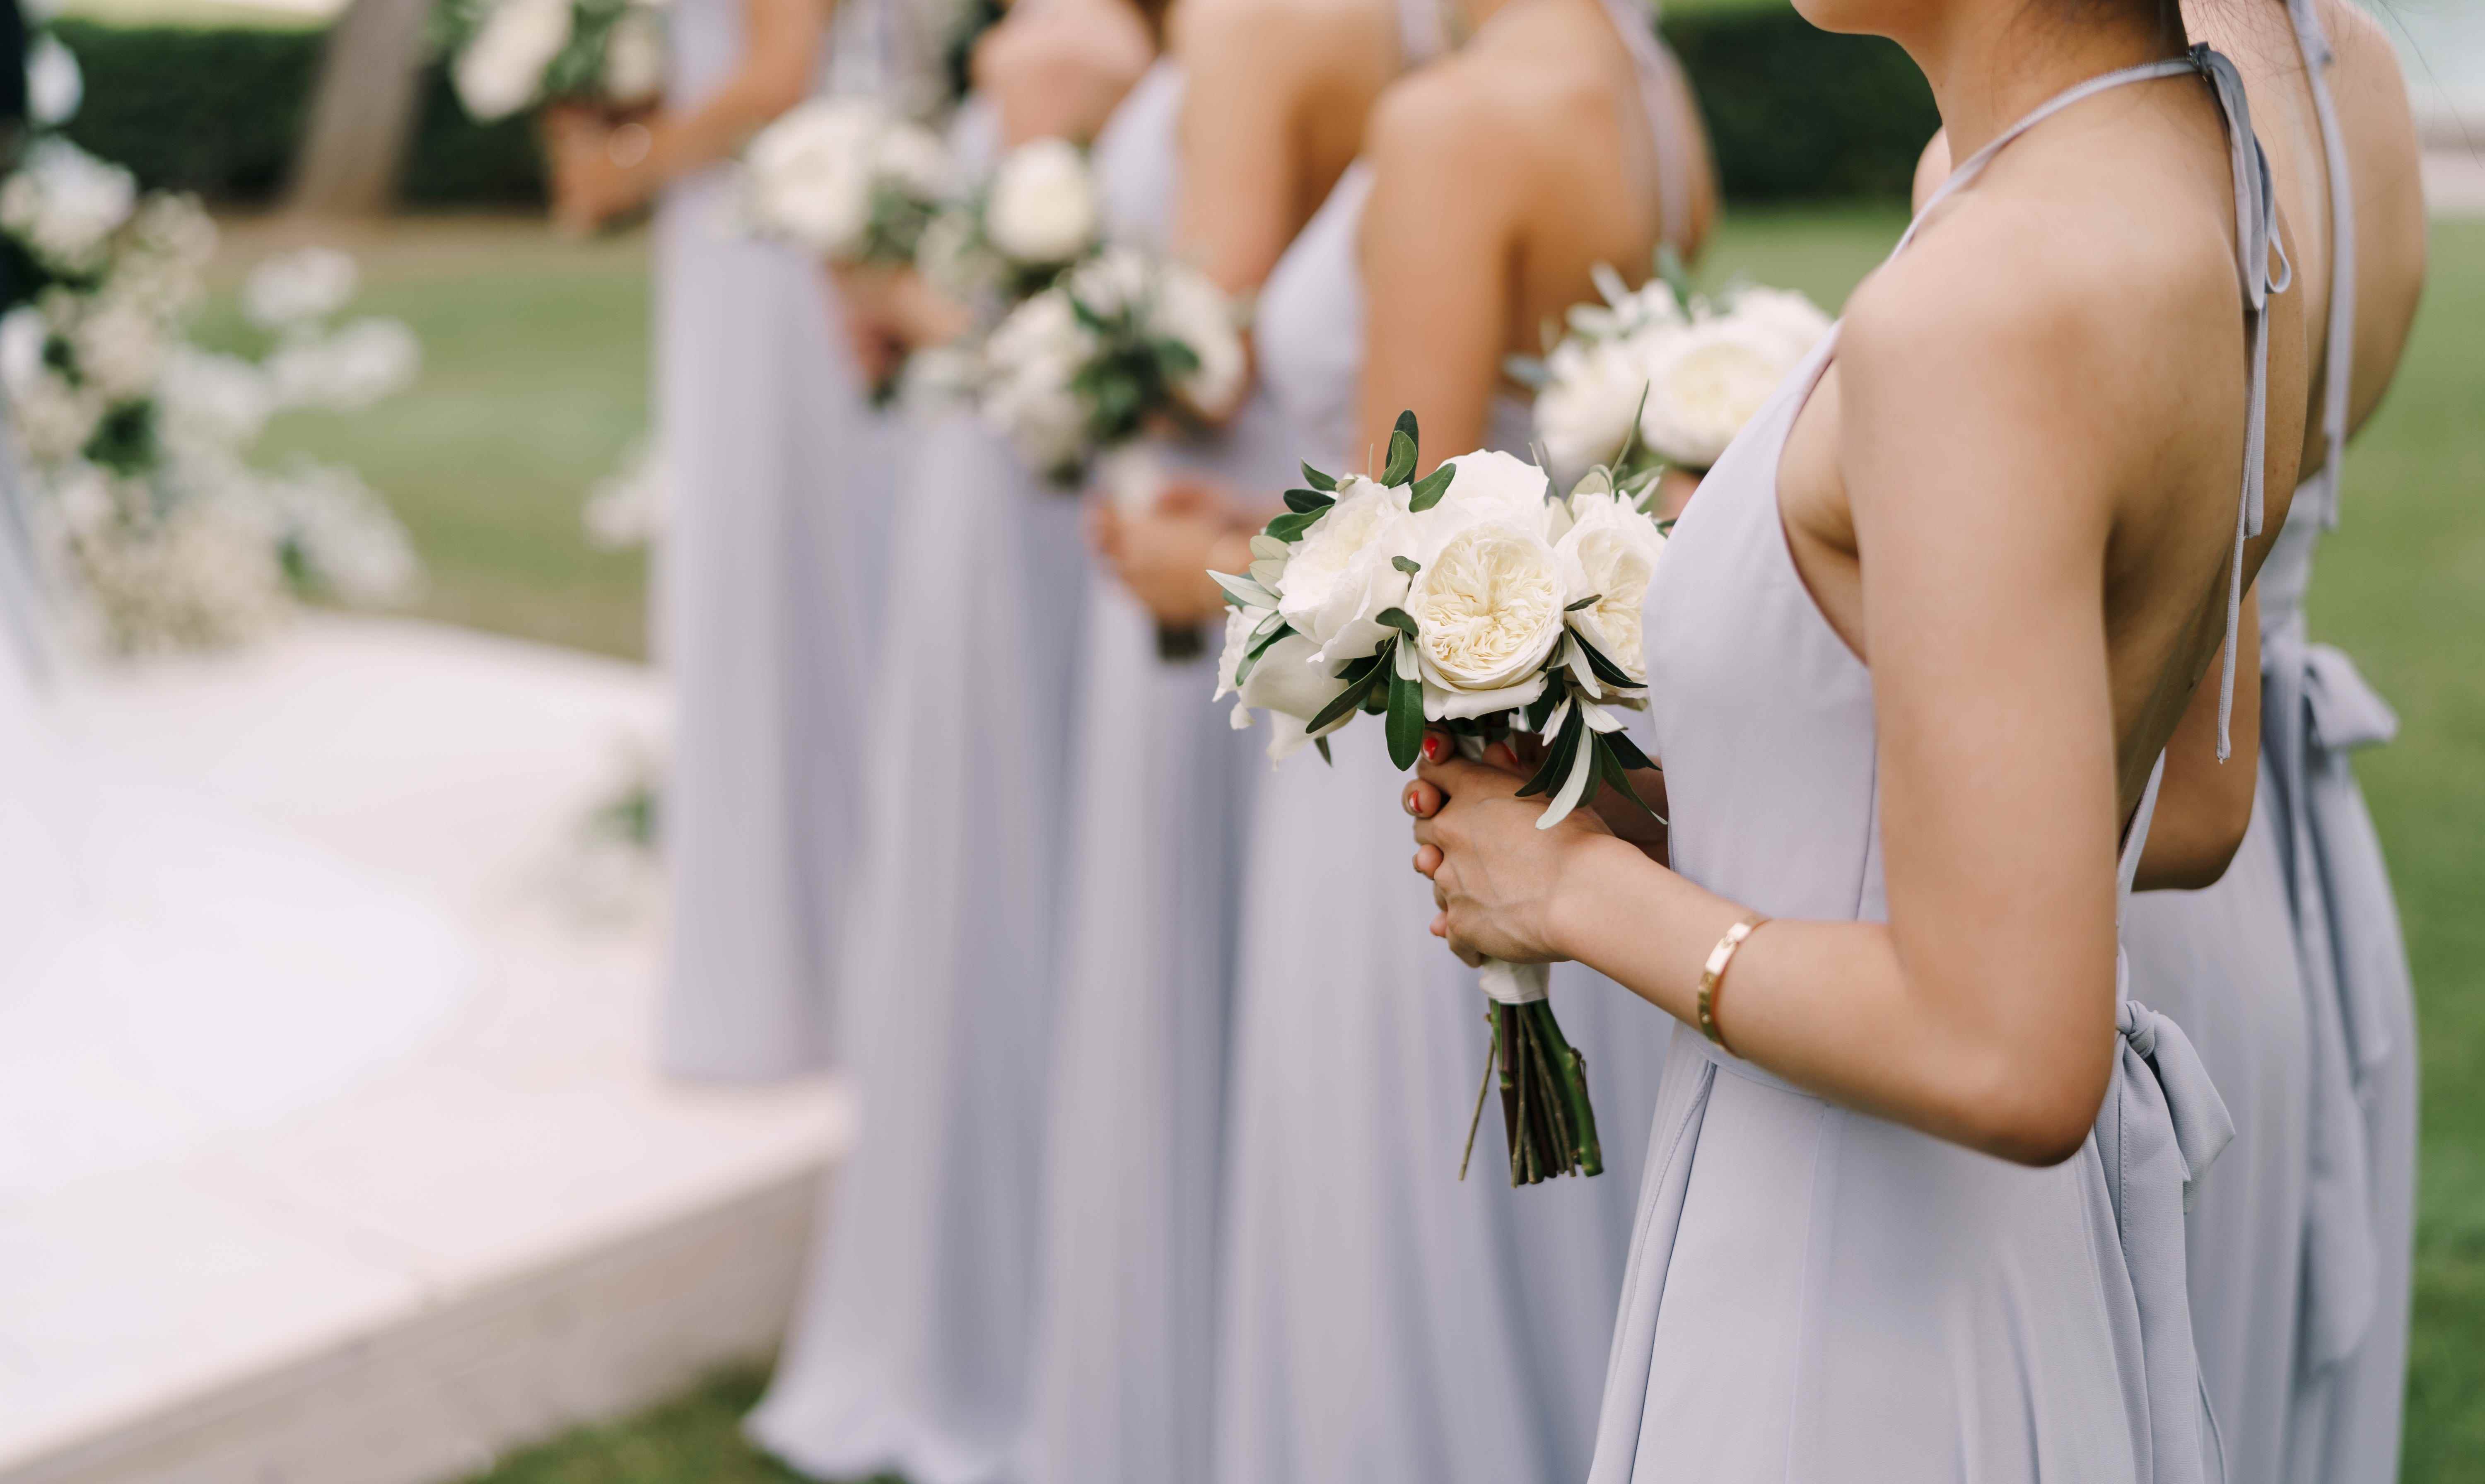 Brautjungfer, die bei einer Hochzeitszeremonie in einer Reihe steht